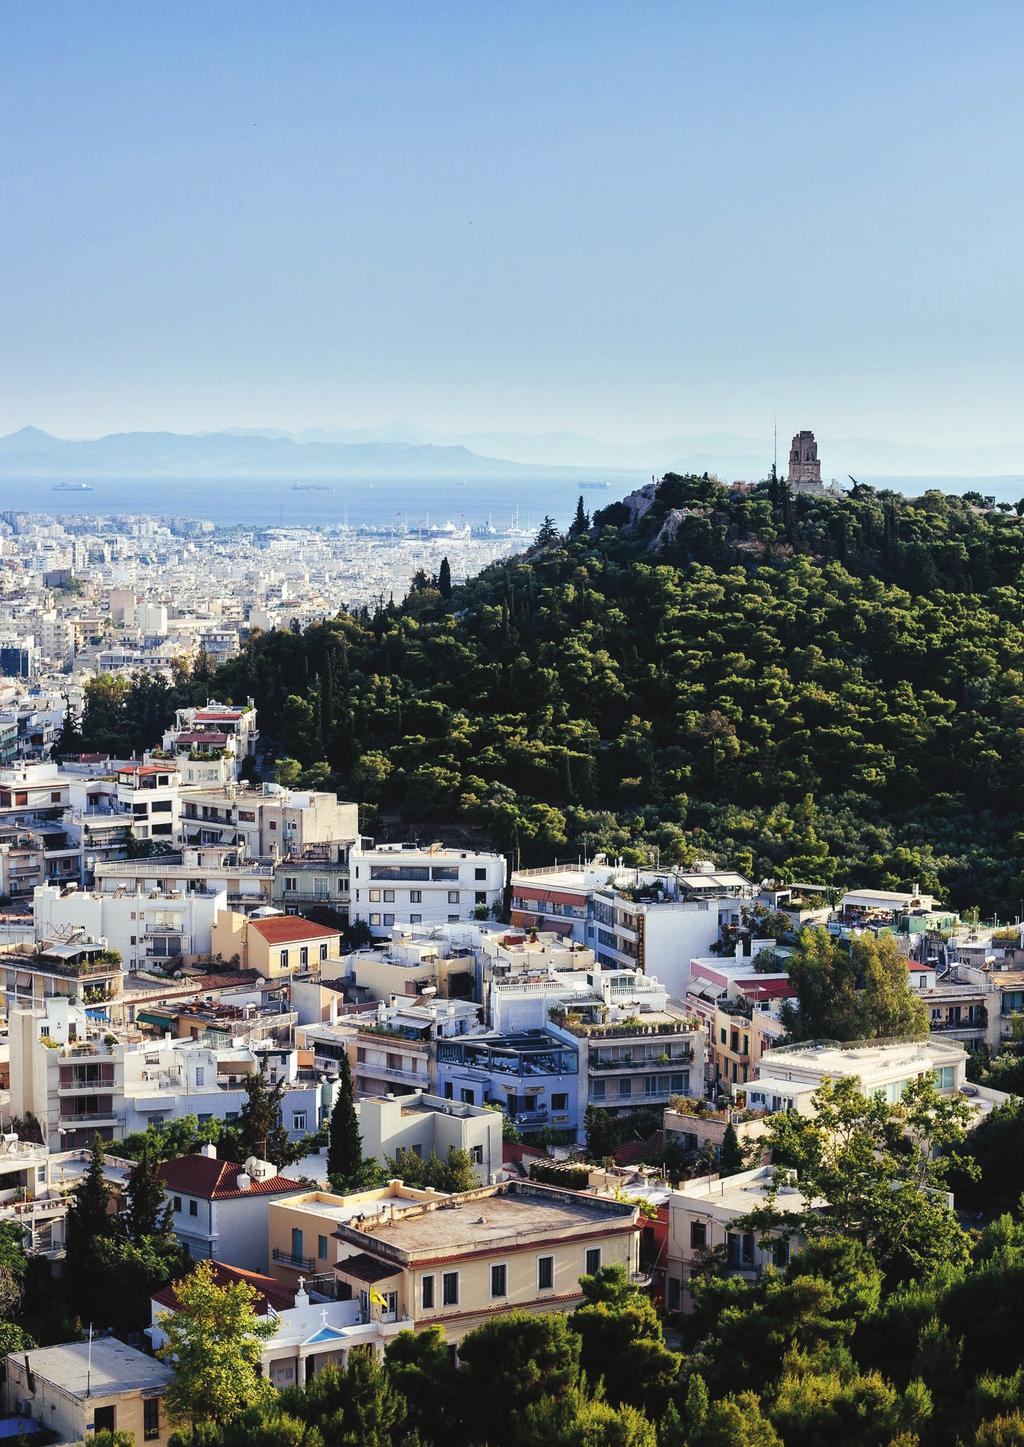 επίλογος Ο Οδικός Χάρτης του 2018 για την Ψηφιακή Αθήνα, επαναδιατυπώνει το αίτημα της έξυπνης πόλης μετατοπίζοντας το επίκεντρό της από την τεχνολογία στον ίδιο τον άνθρωπο.